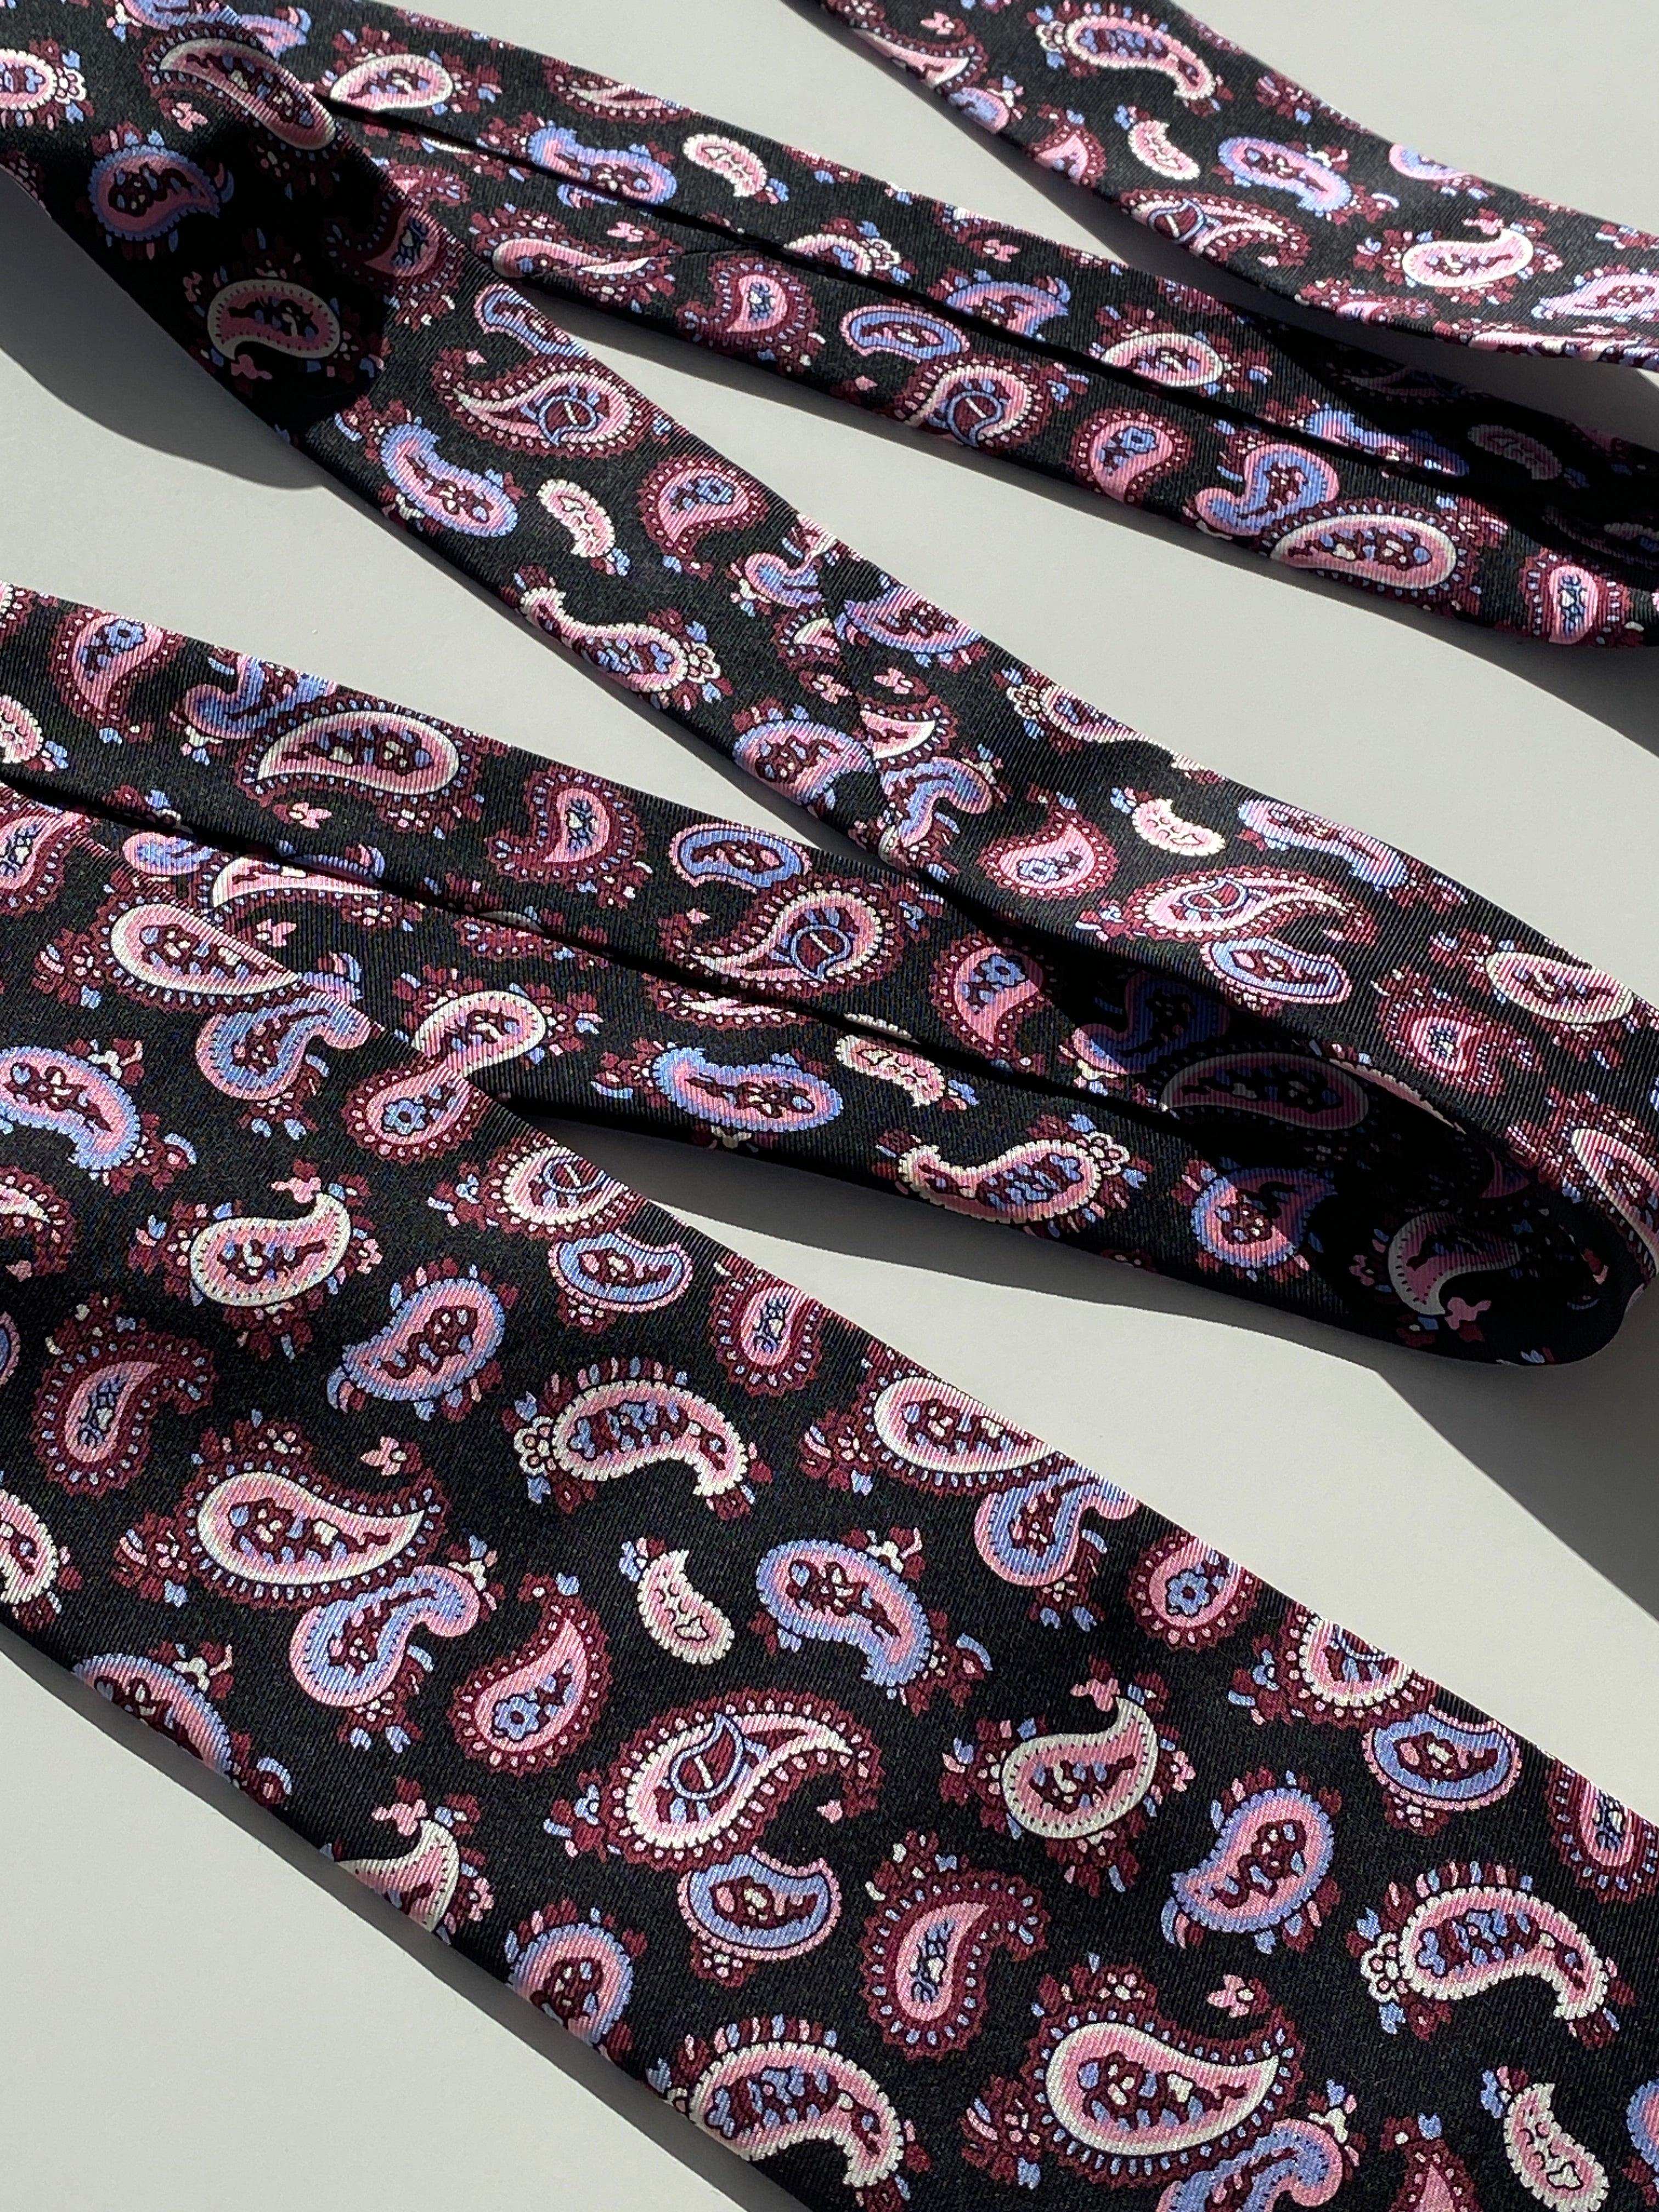 Vintage Paul Kehl Printed Silk Tie